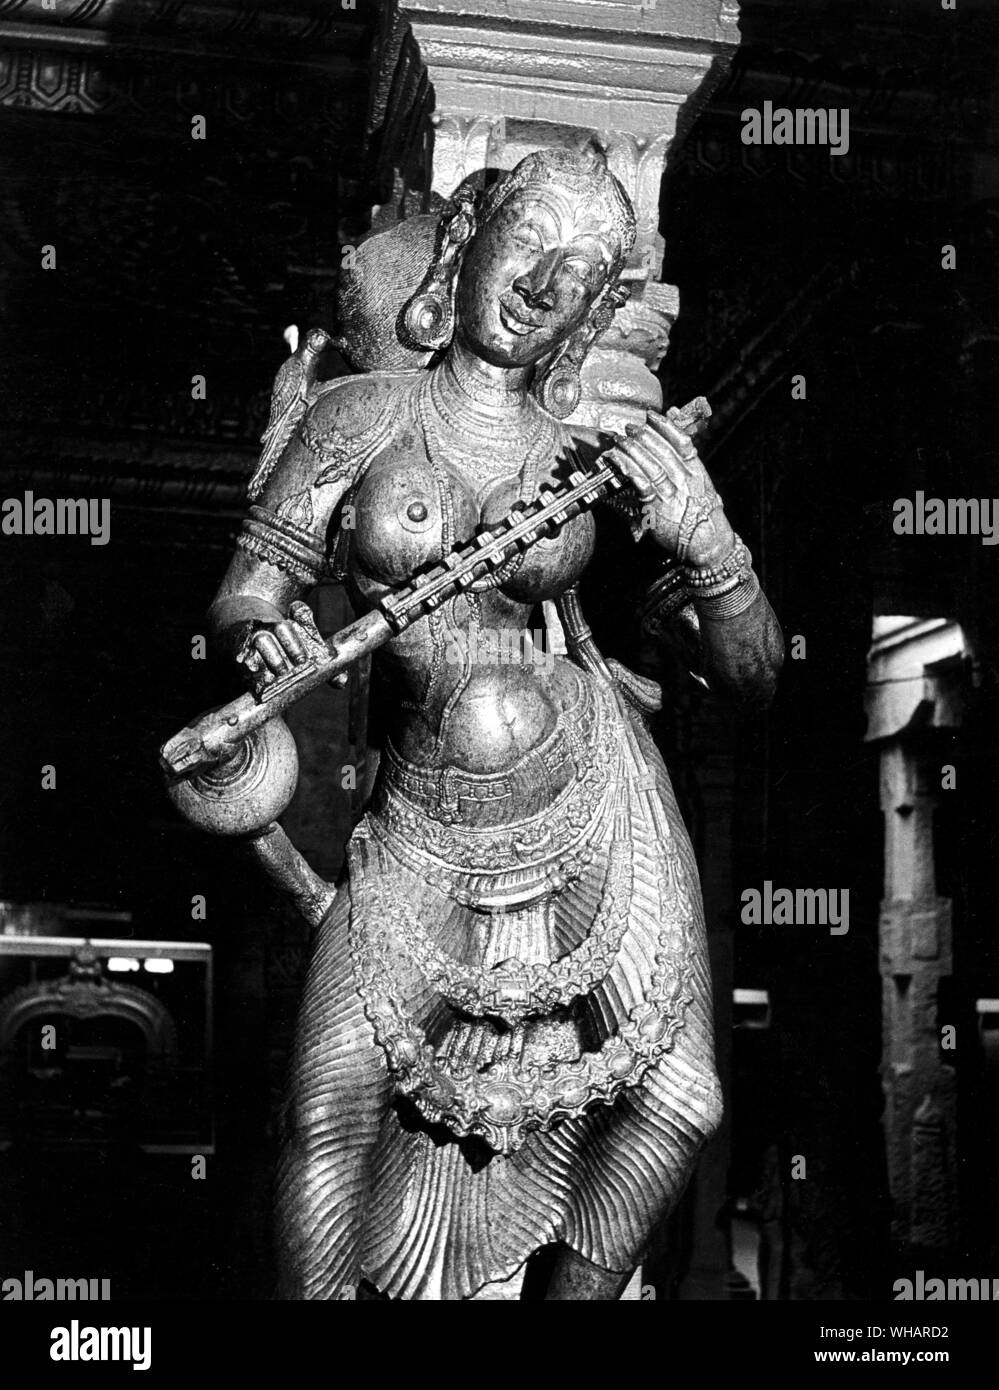 Madunai. Saraswathy diosa de la sabiduría con la Veena. Saraswati, la diosa de la sabiduría, el arte y la música es la hija del señor Shiva y de la Diosa Durga. Se cree que la diosa Saraswati dota a los seres humanos con los poderes de la voz, la sabiduría y el aprendizaje. Ella tiene cuatro manos que representan cuatro aspectos de la personalidad humana en el aprendizaje: la mente, el intelecto, la lucidez mental y el ego. Ella tiene las sagradas escrituras en una mano y un loto - el símbolo del conocimiento verdadero - en el segundo. Con sus dos manos ella reproduce la música del amor y de la vida en un instrumento de cuerda llamado veena. Ella está vestida de blanco - el Foto de stock